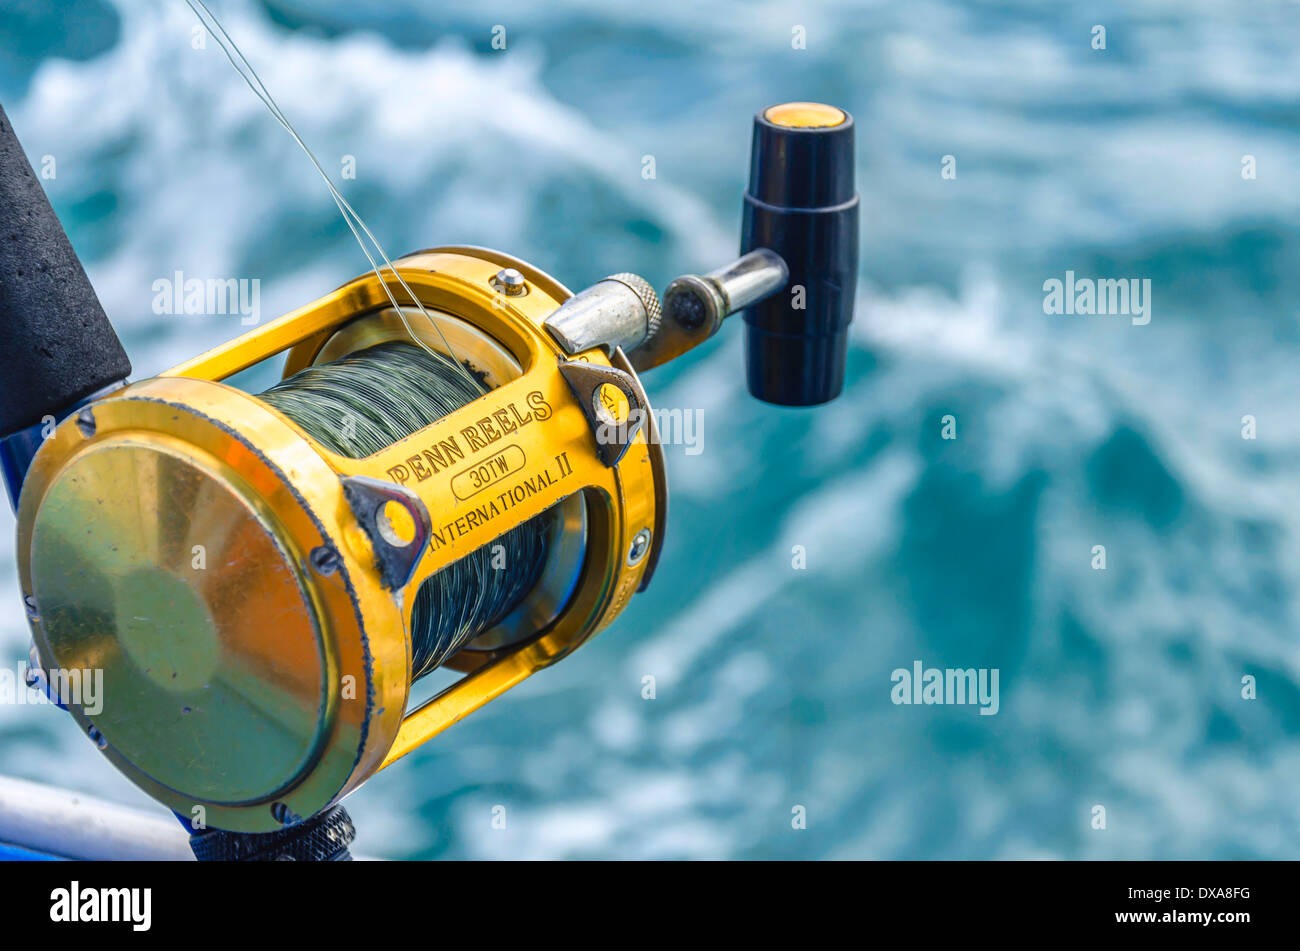 https://c8.alamy.com/comp/DXA8FG/close-up-of-deep-sea-reel-DXA8FG.jpg